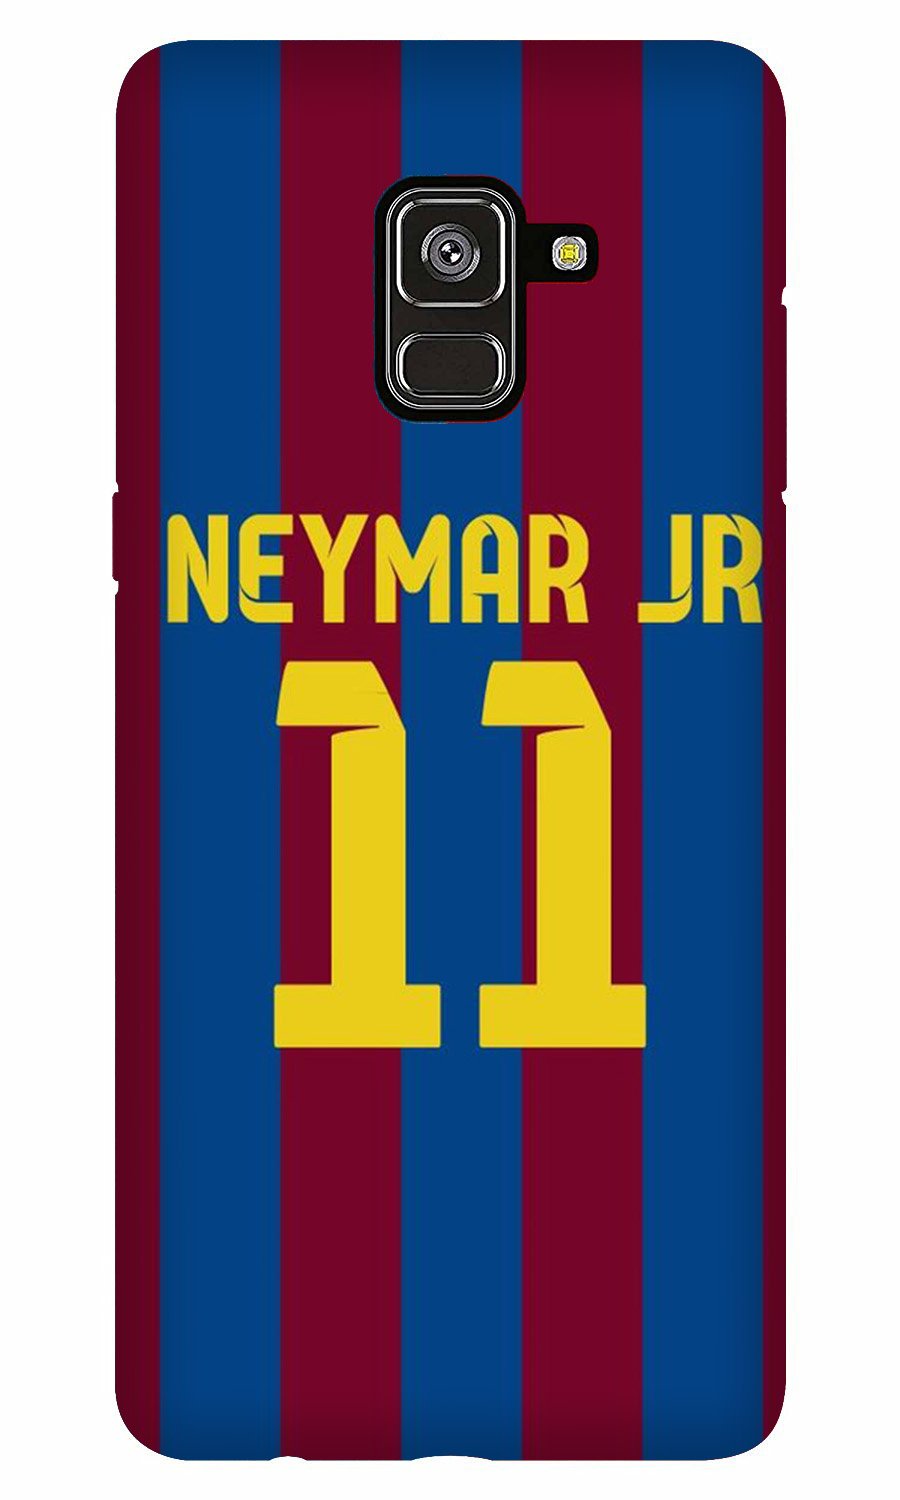 Neymar Jr Case for Galaxy J6/On6(Design - 162)